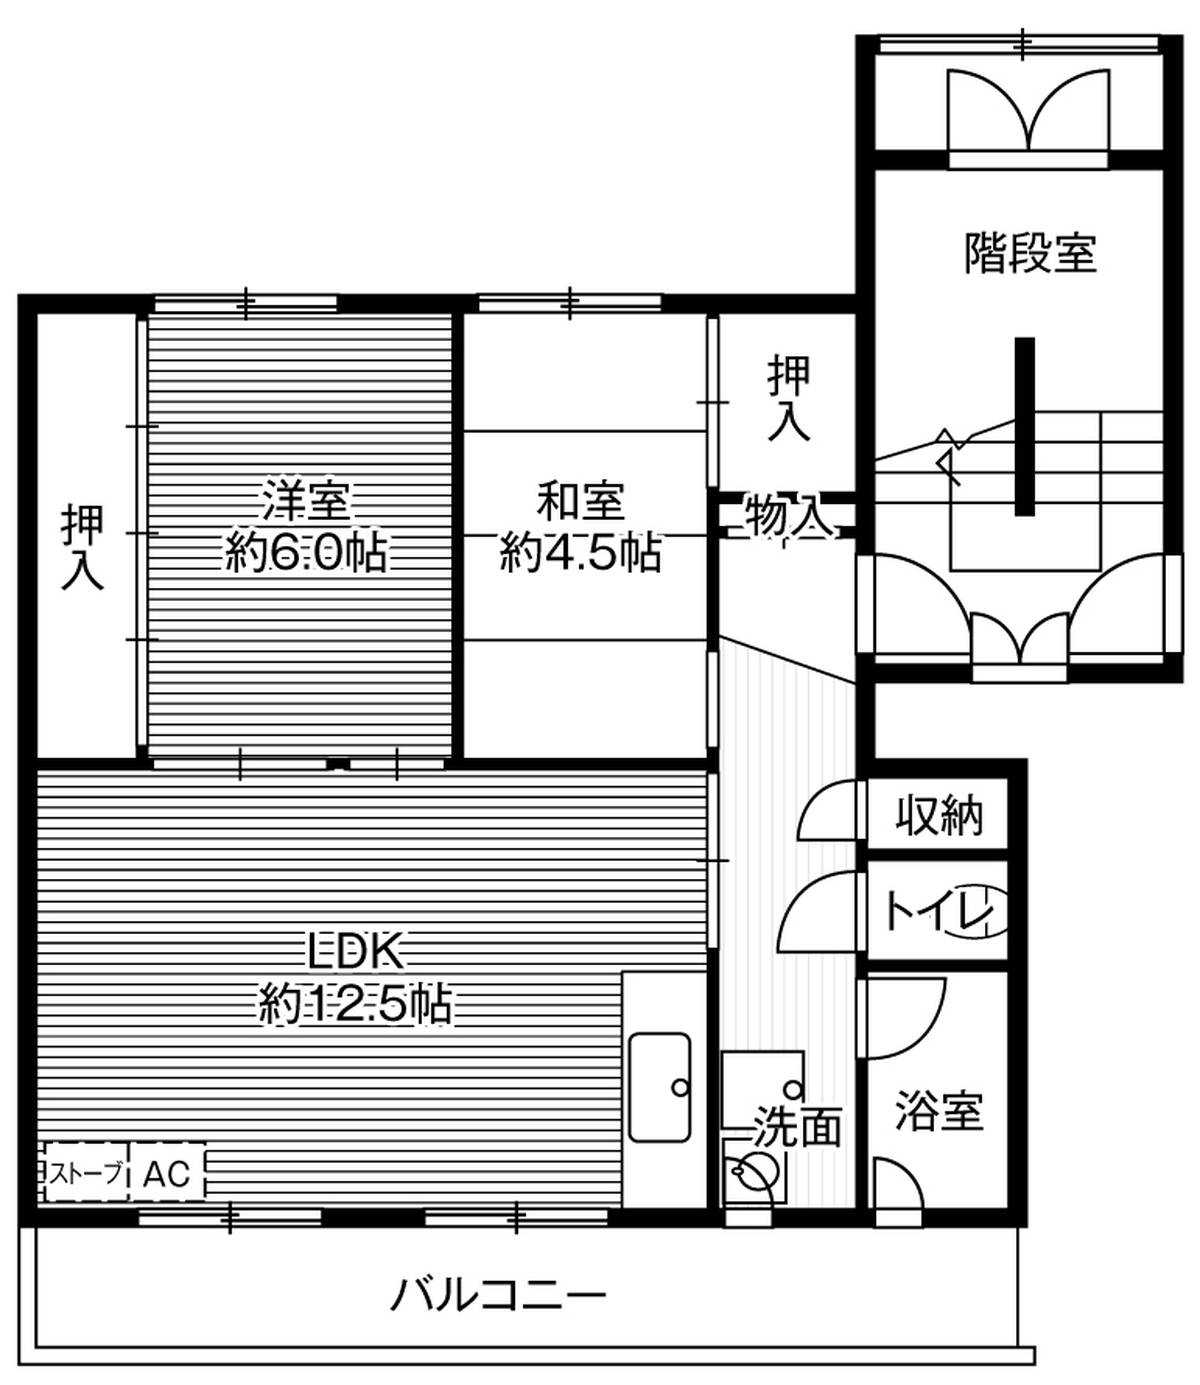 2LDK floorplan of Village House Kanahori in Hakodate-shi